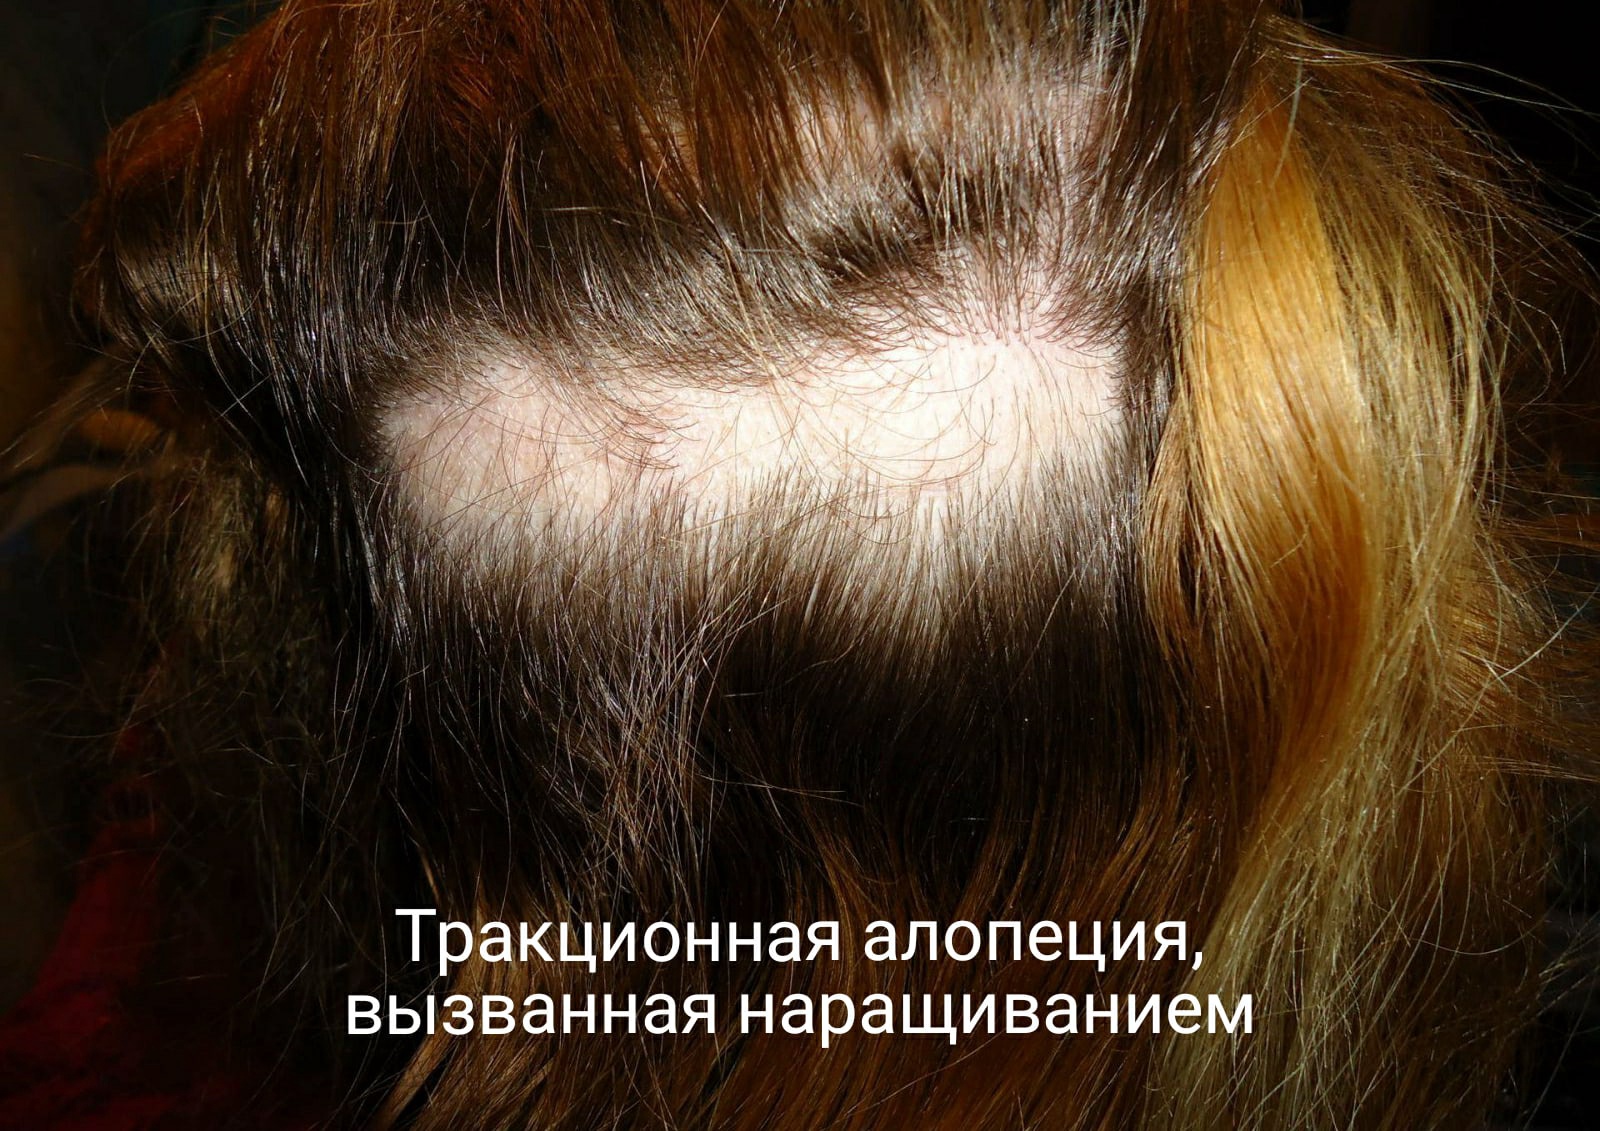 Наращивание волос и алопеция: есть ли связь?